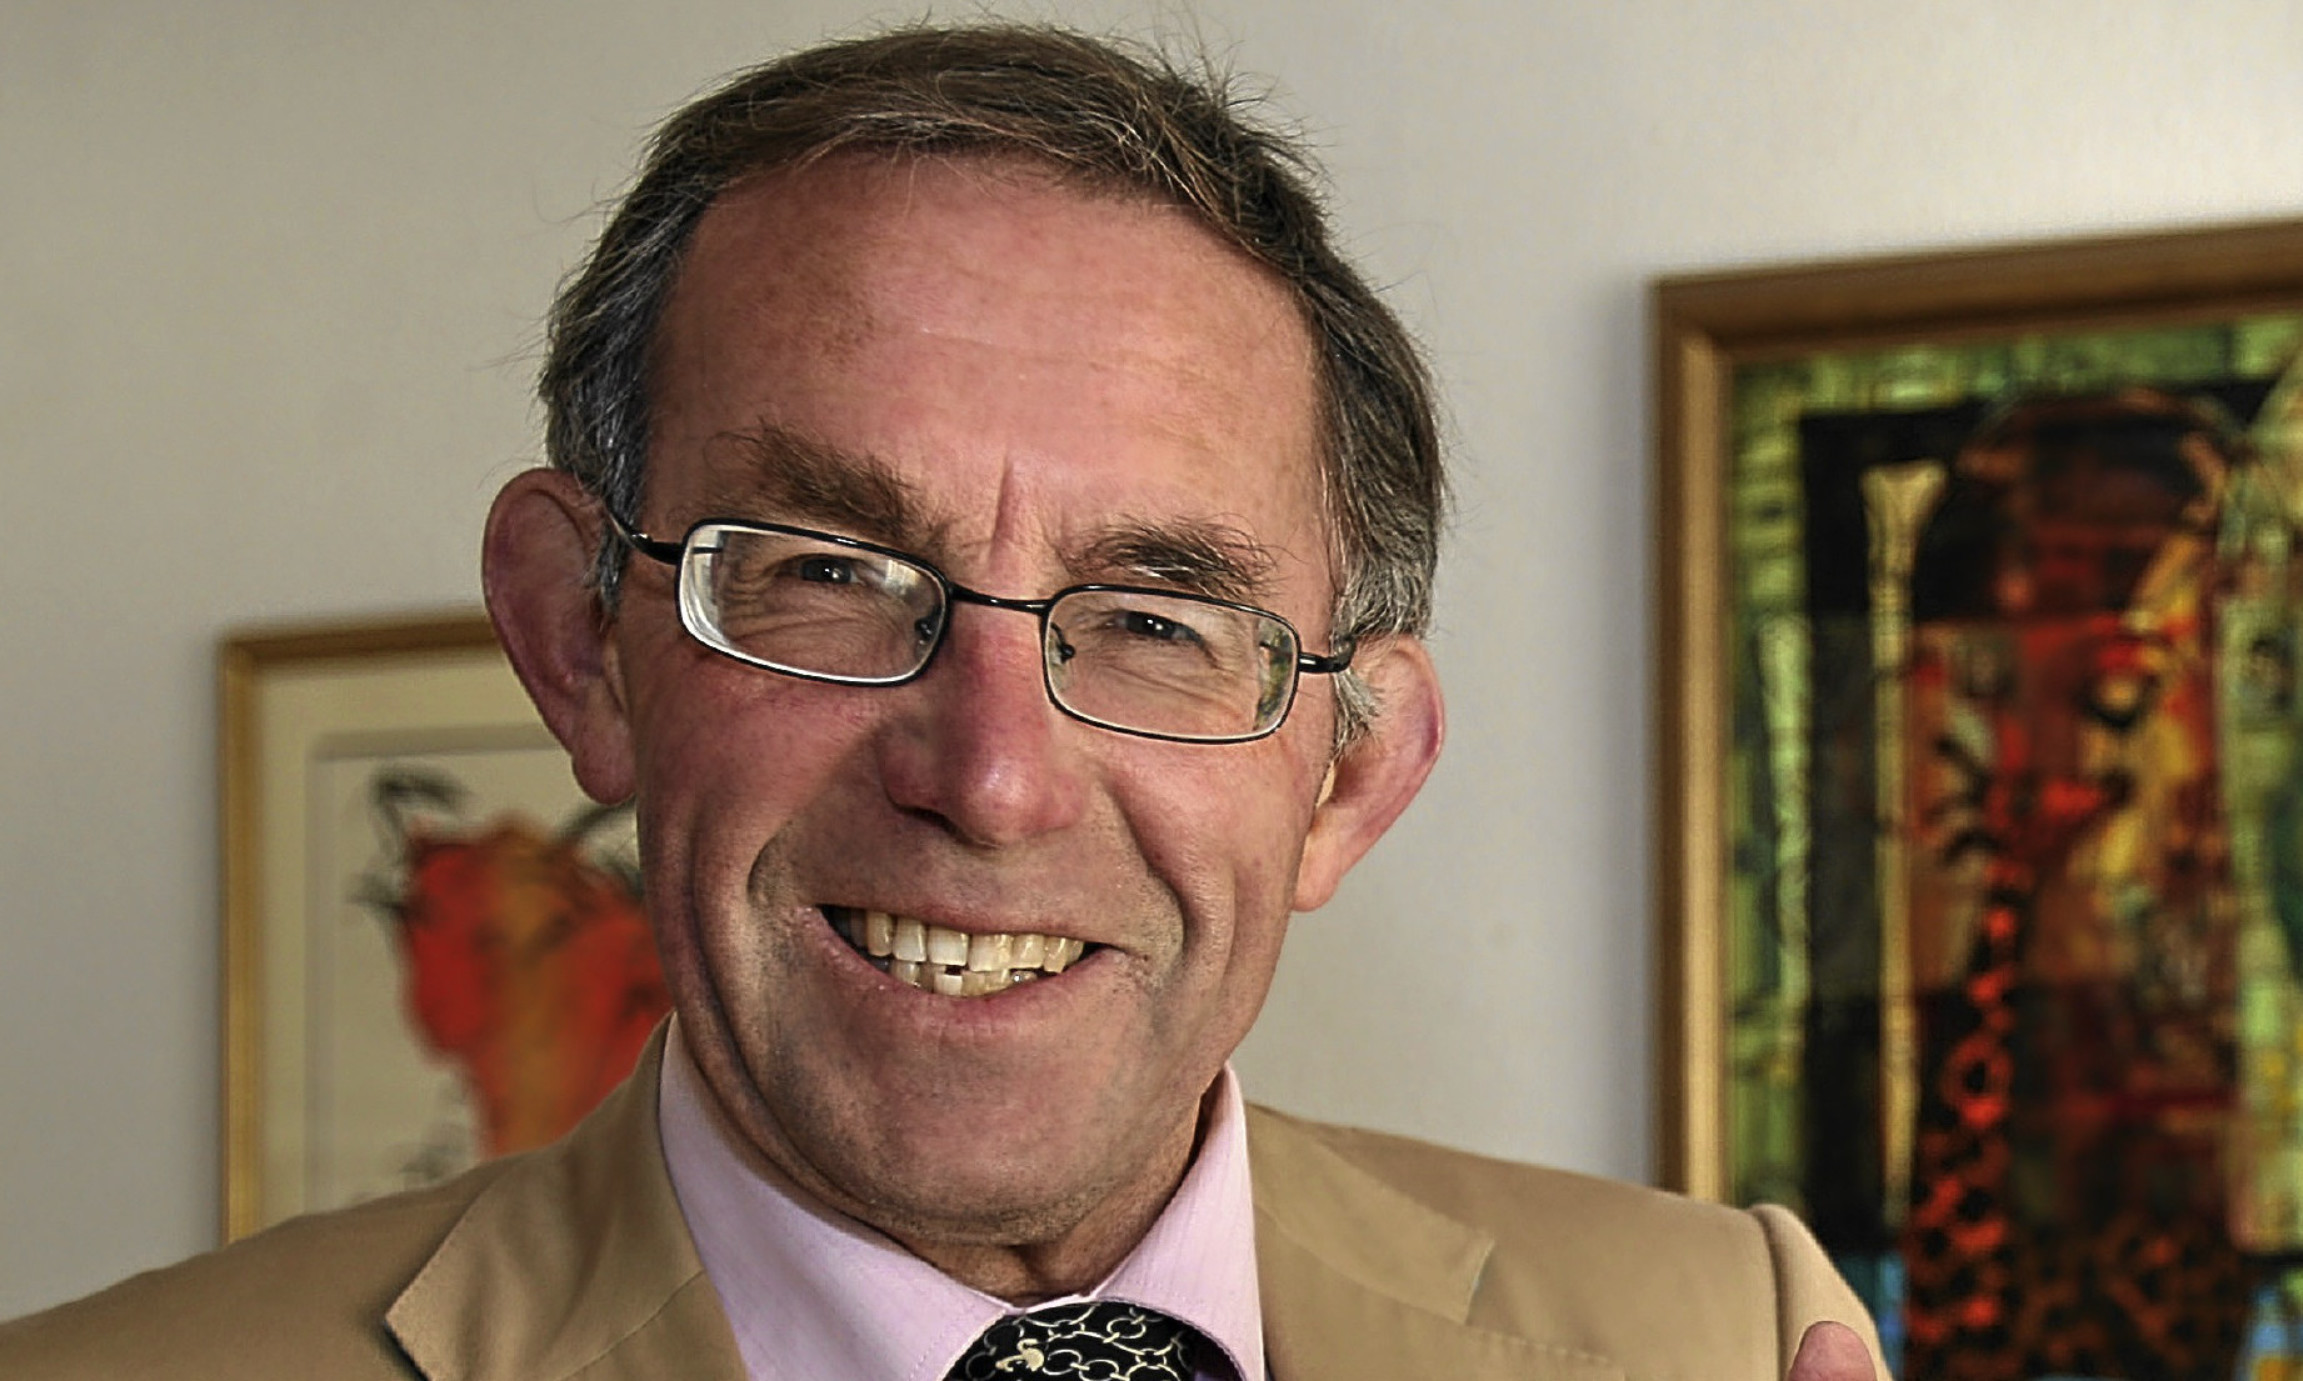 Former Olympian, councillor and teacher Donald Macgregor